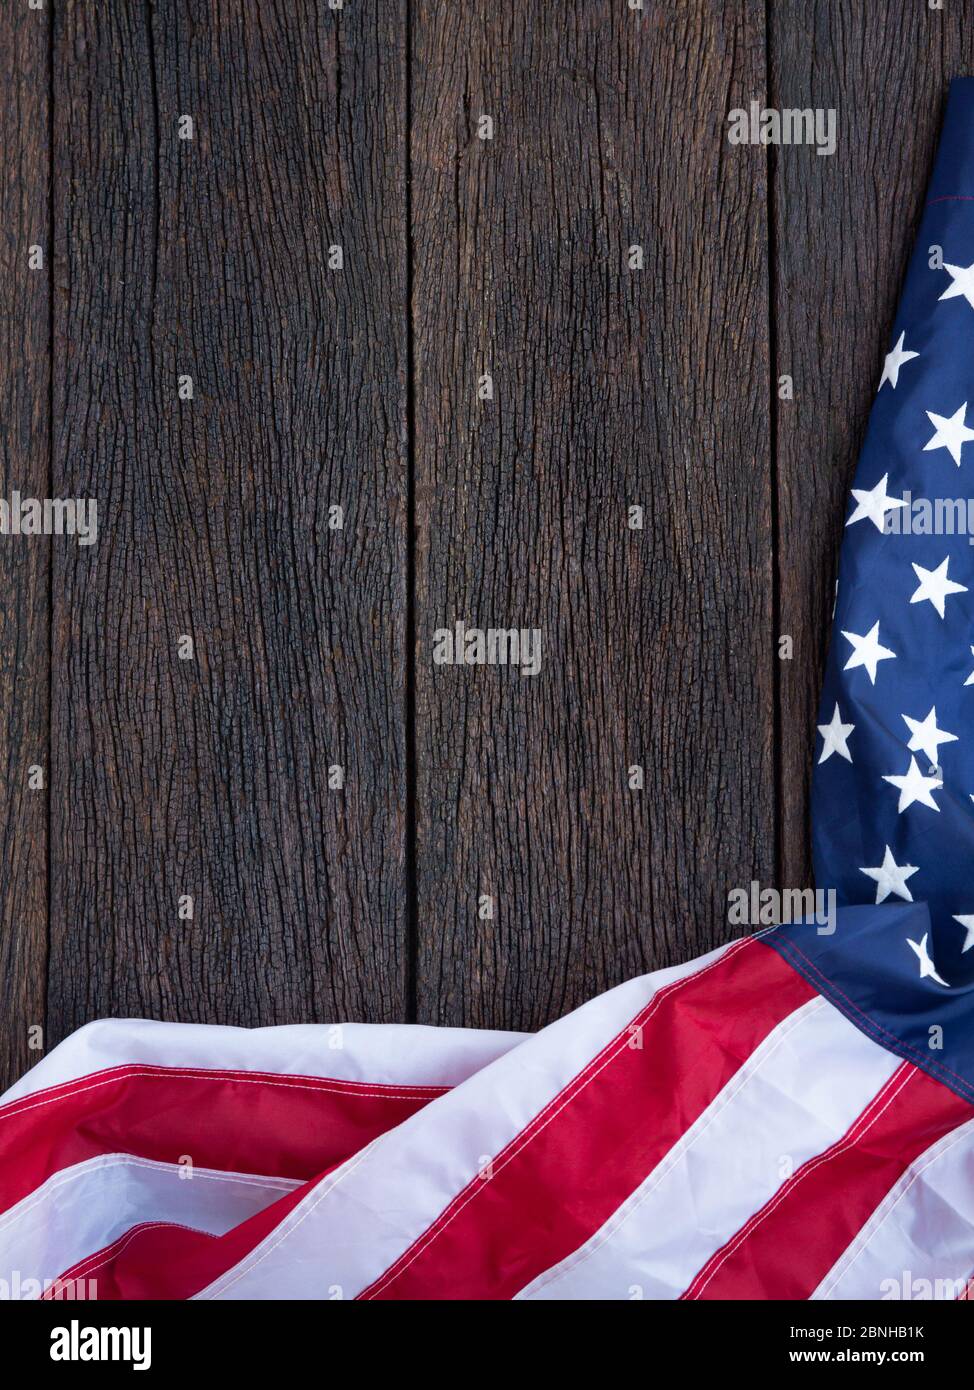 Amerika Flagge winken Muster auf Holzhintergrund in Tischansicht, rot blau weiß Streifen Konzept für USA 4. juli Unabhängigkeitstag, Symbol des Patrioten Stockfoto